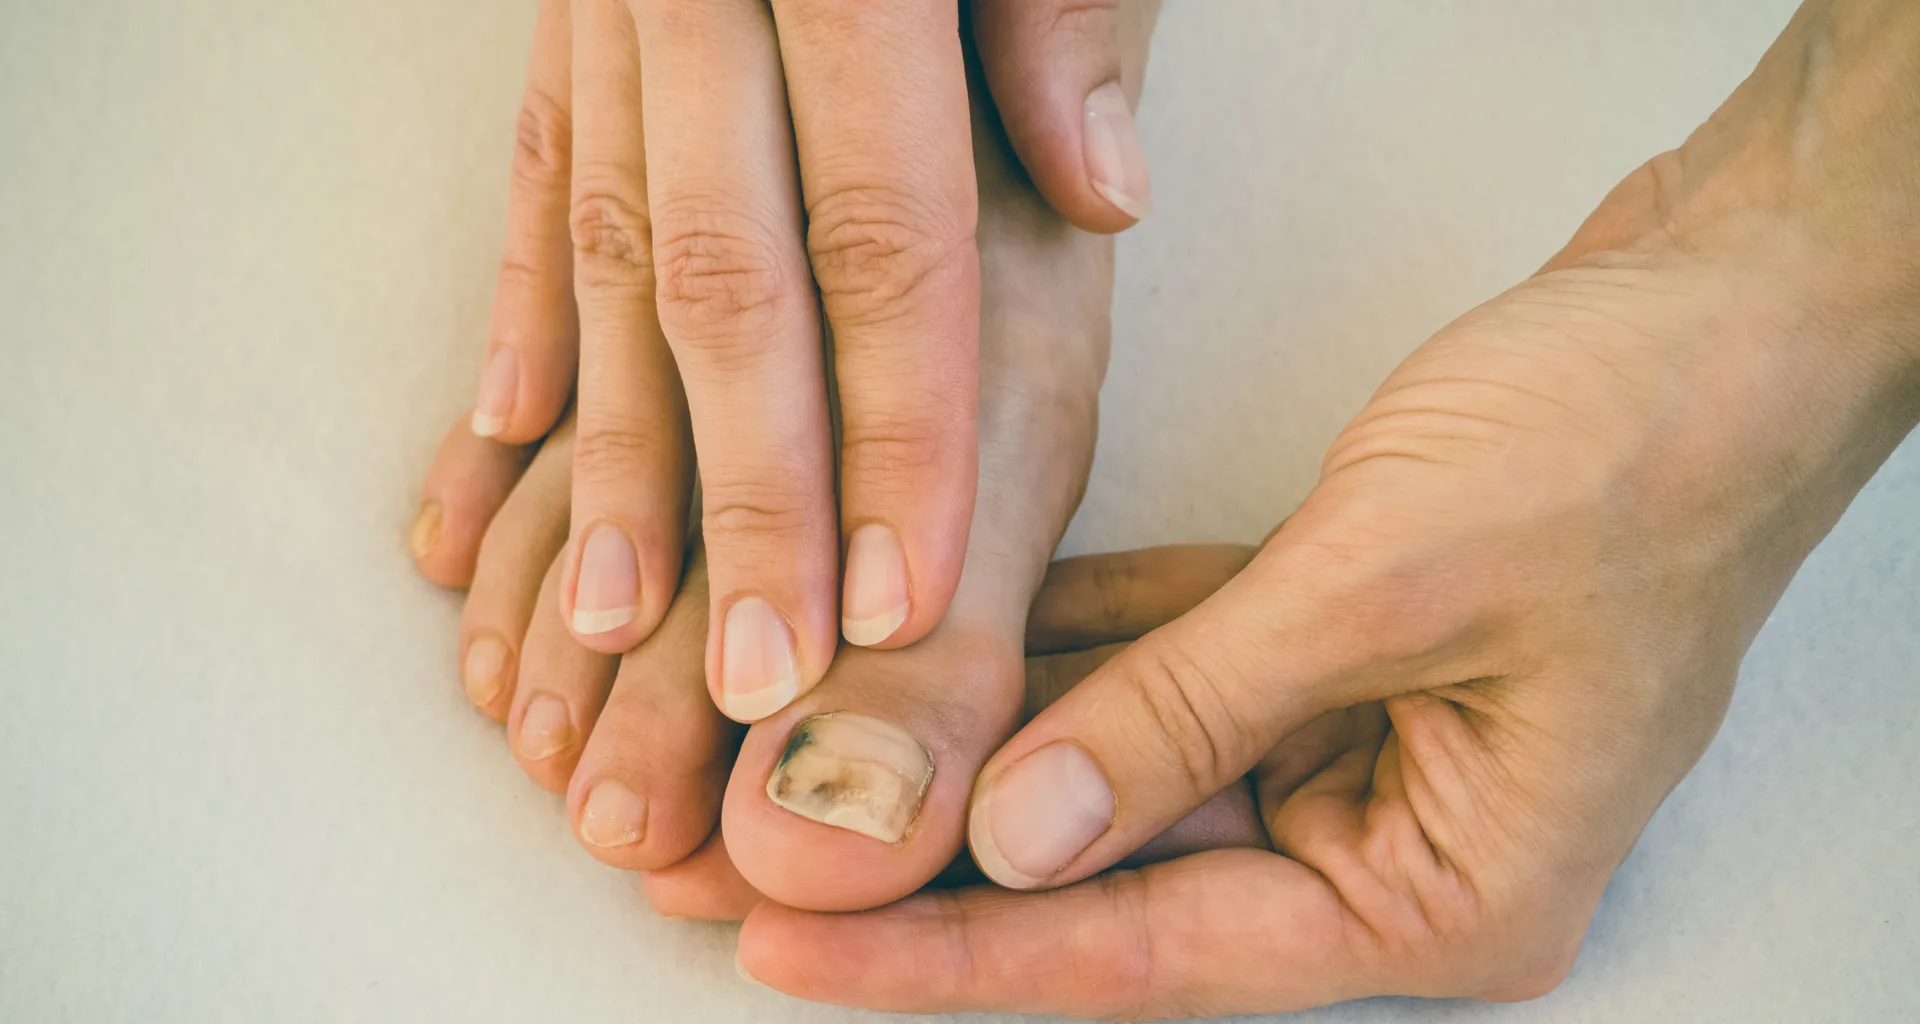 brzydkie paznokcie u stóp